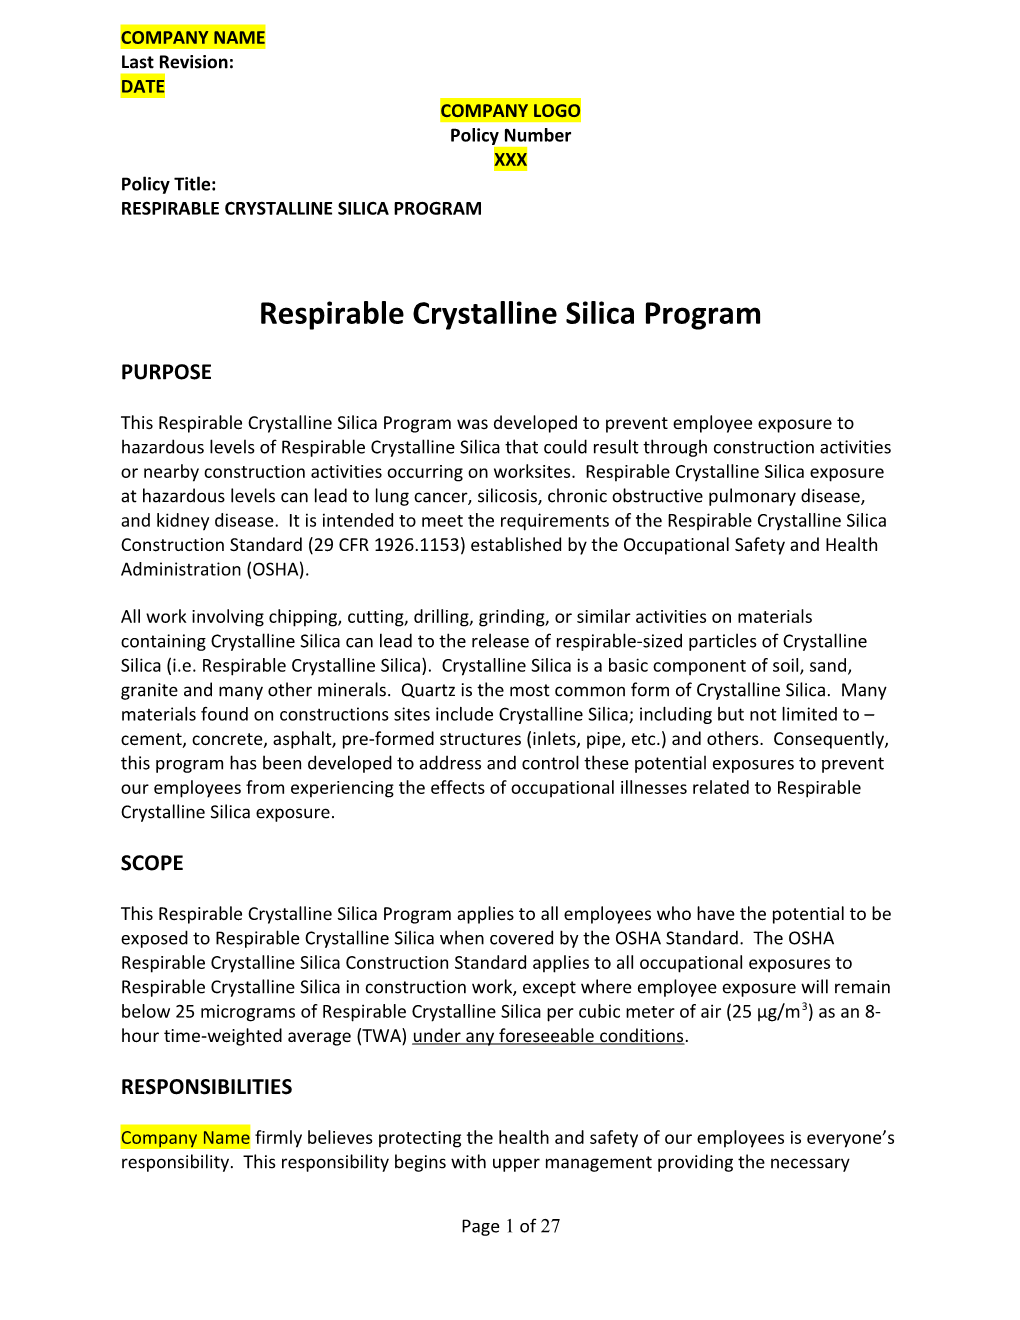 Respirable Crystalline Silica Program